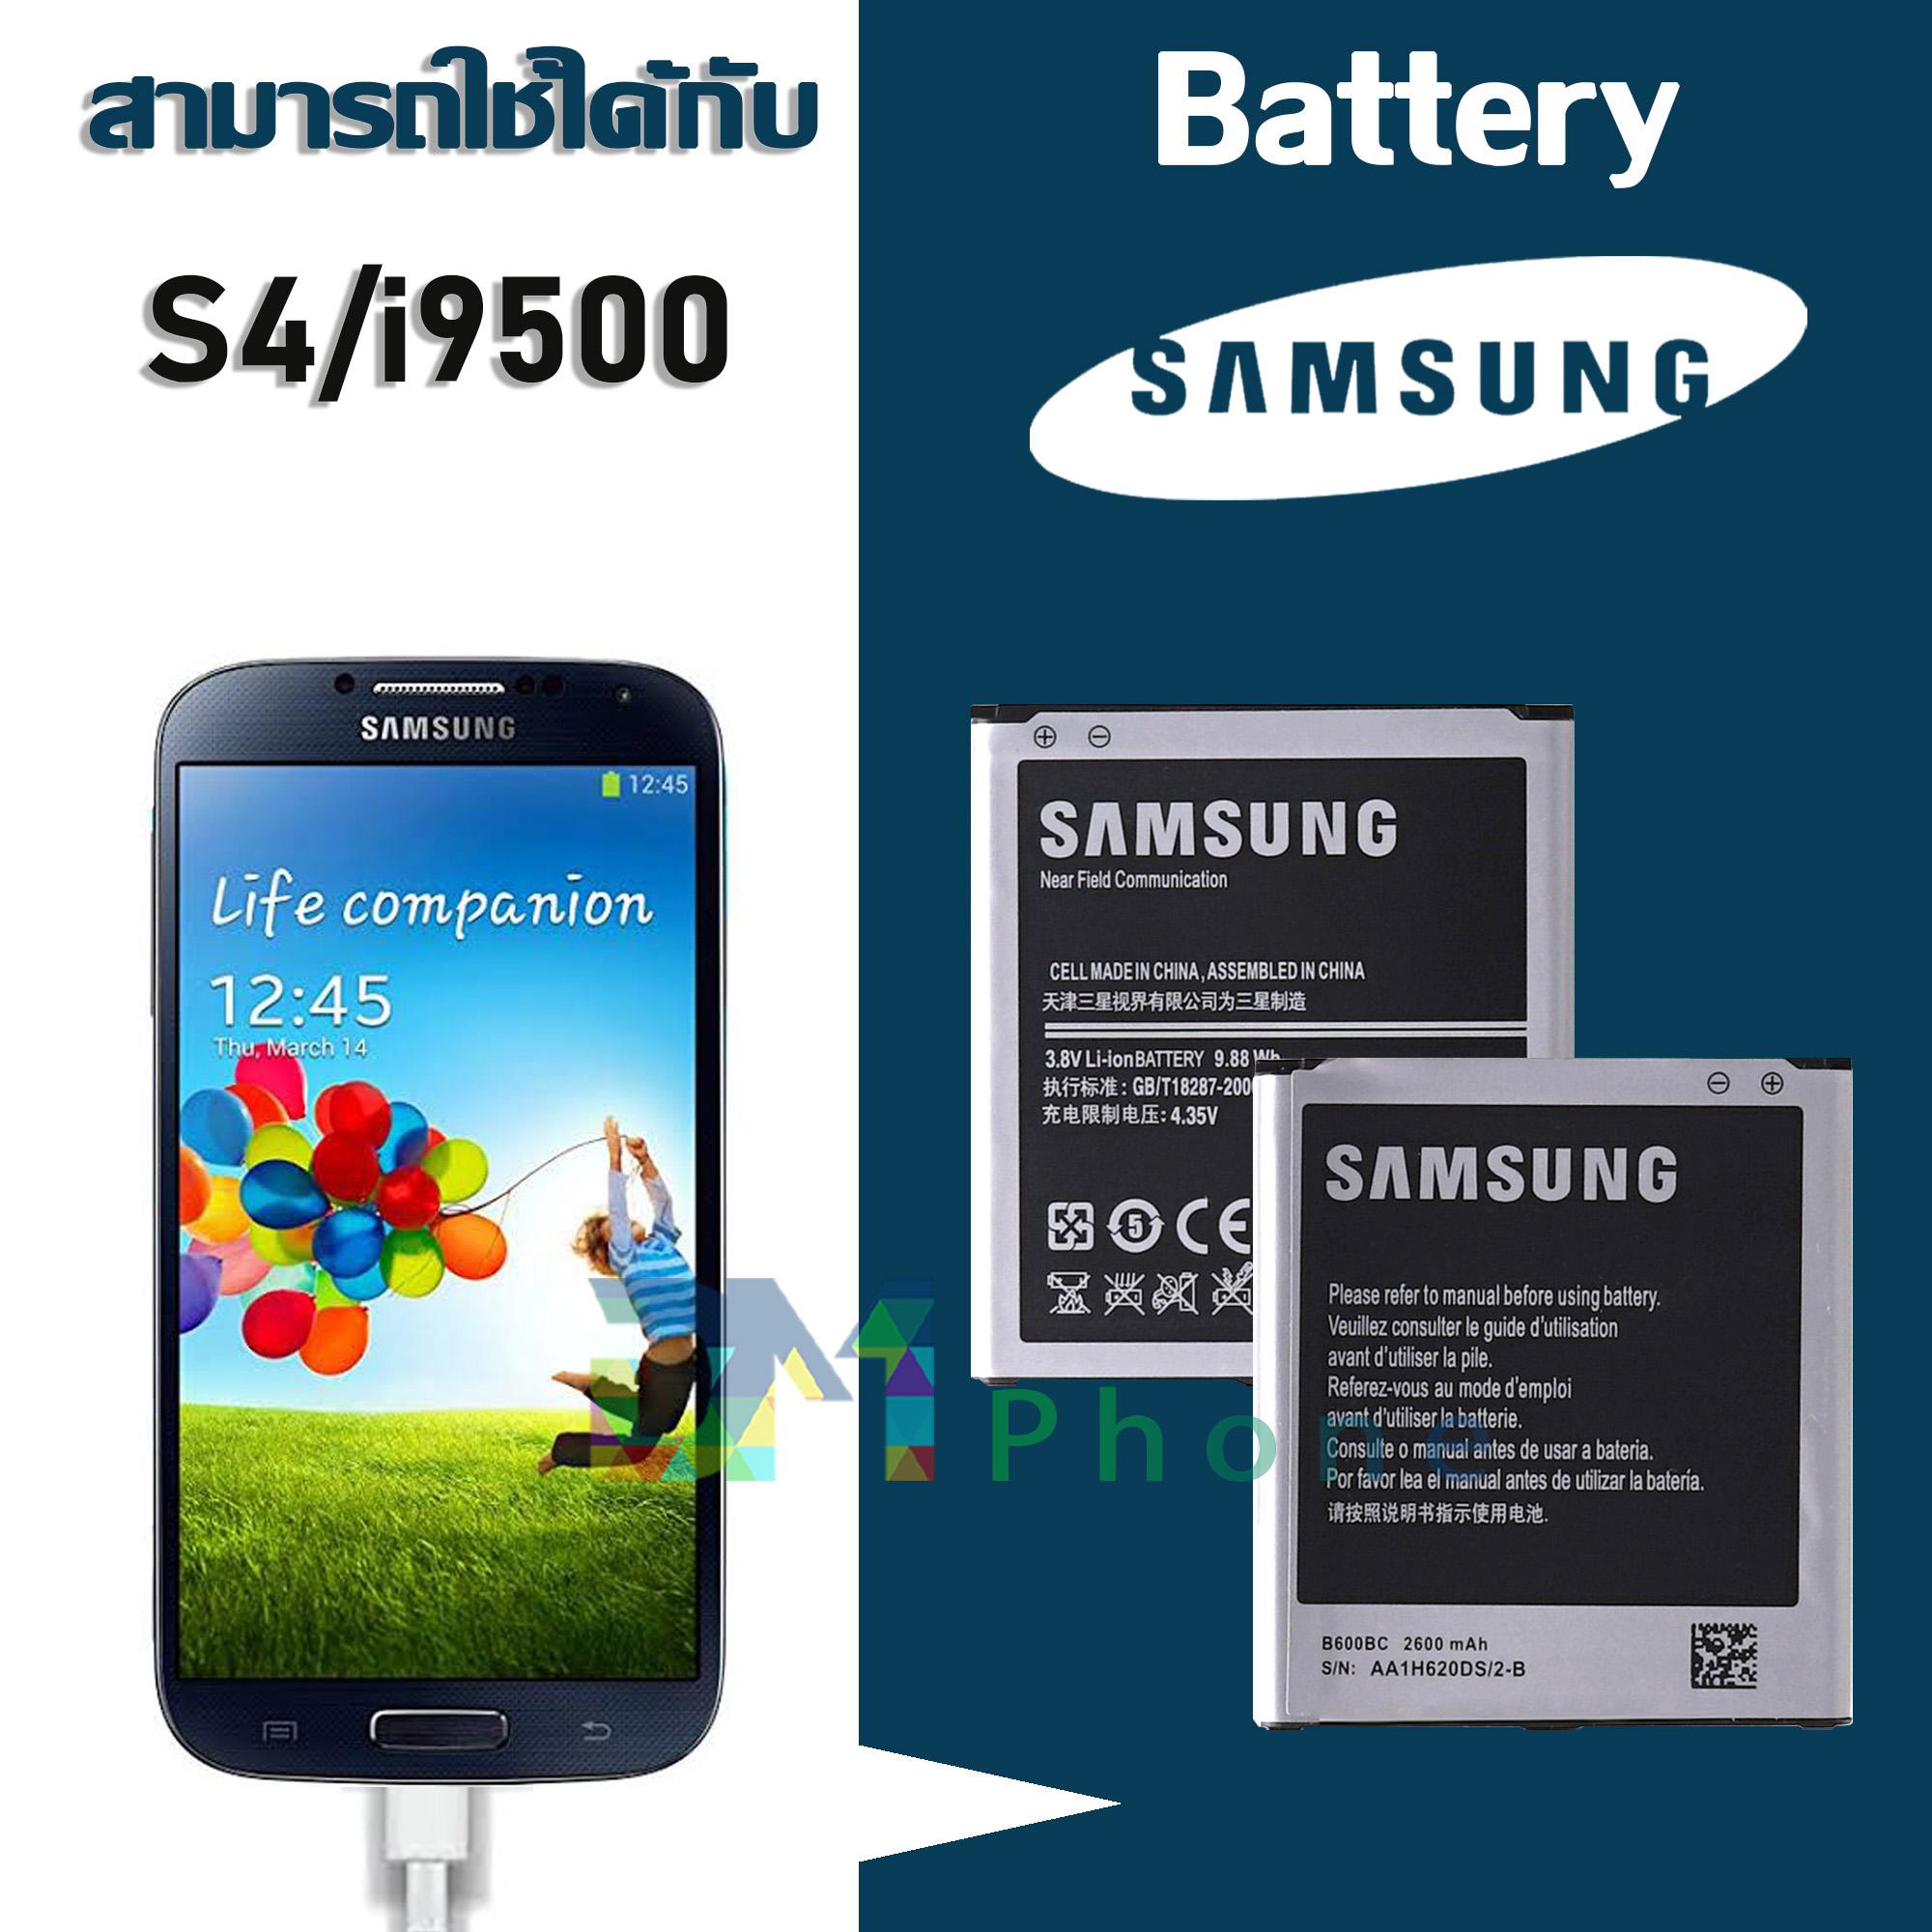 แบต samsung galaxy S4/i9500 แบตเตอรี่ battery Samsung กาแล็กซี่ S4/i9500 มีประกัน 6 เดือน